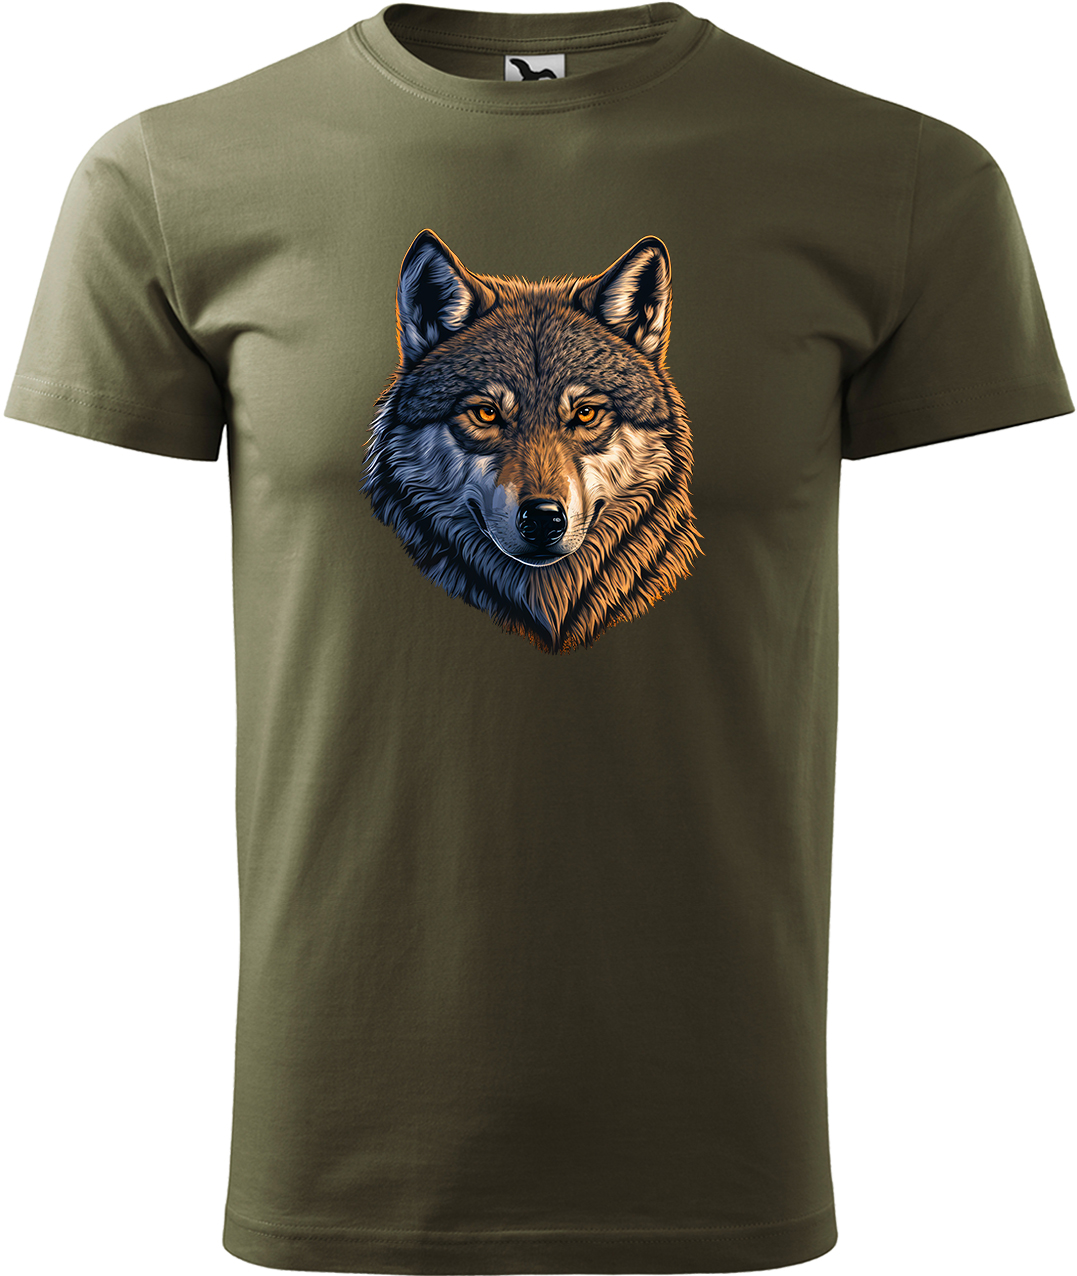 Pánské tričko s vlkem - Hlava vlka Velikost: L, Barva: Military (69), Střih: pánský